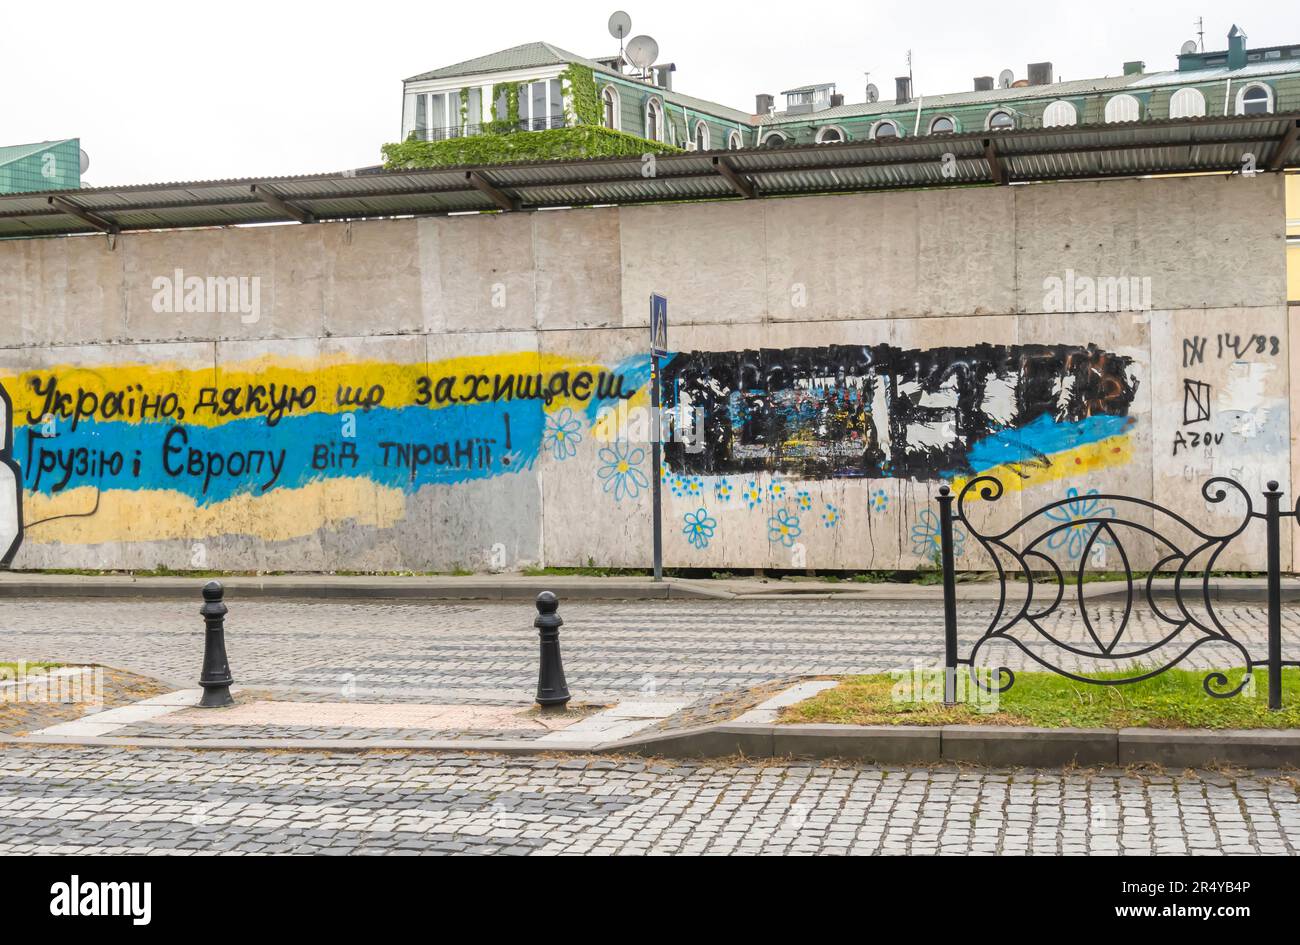 Mural 'Ukraine, thank you protecting Georgia and Ukraine from tyranny'. Azov 14/88 neonazi graffii, a mural glorifying Ukraine vs Russia. Batumi Stock Photo